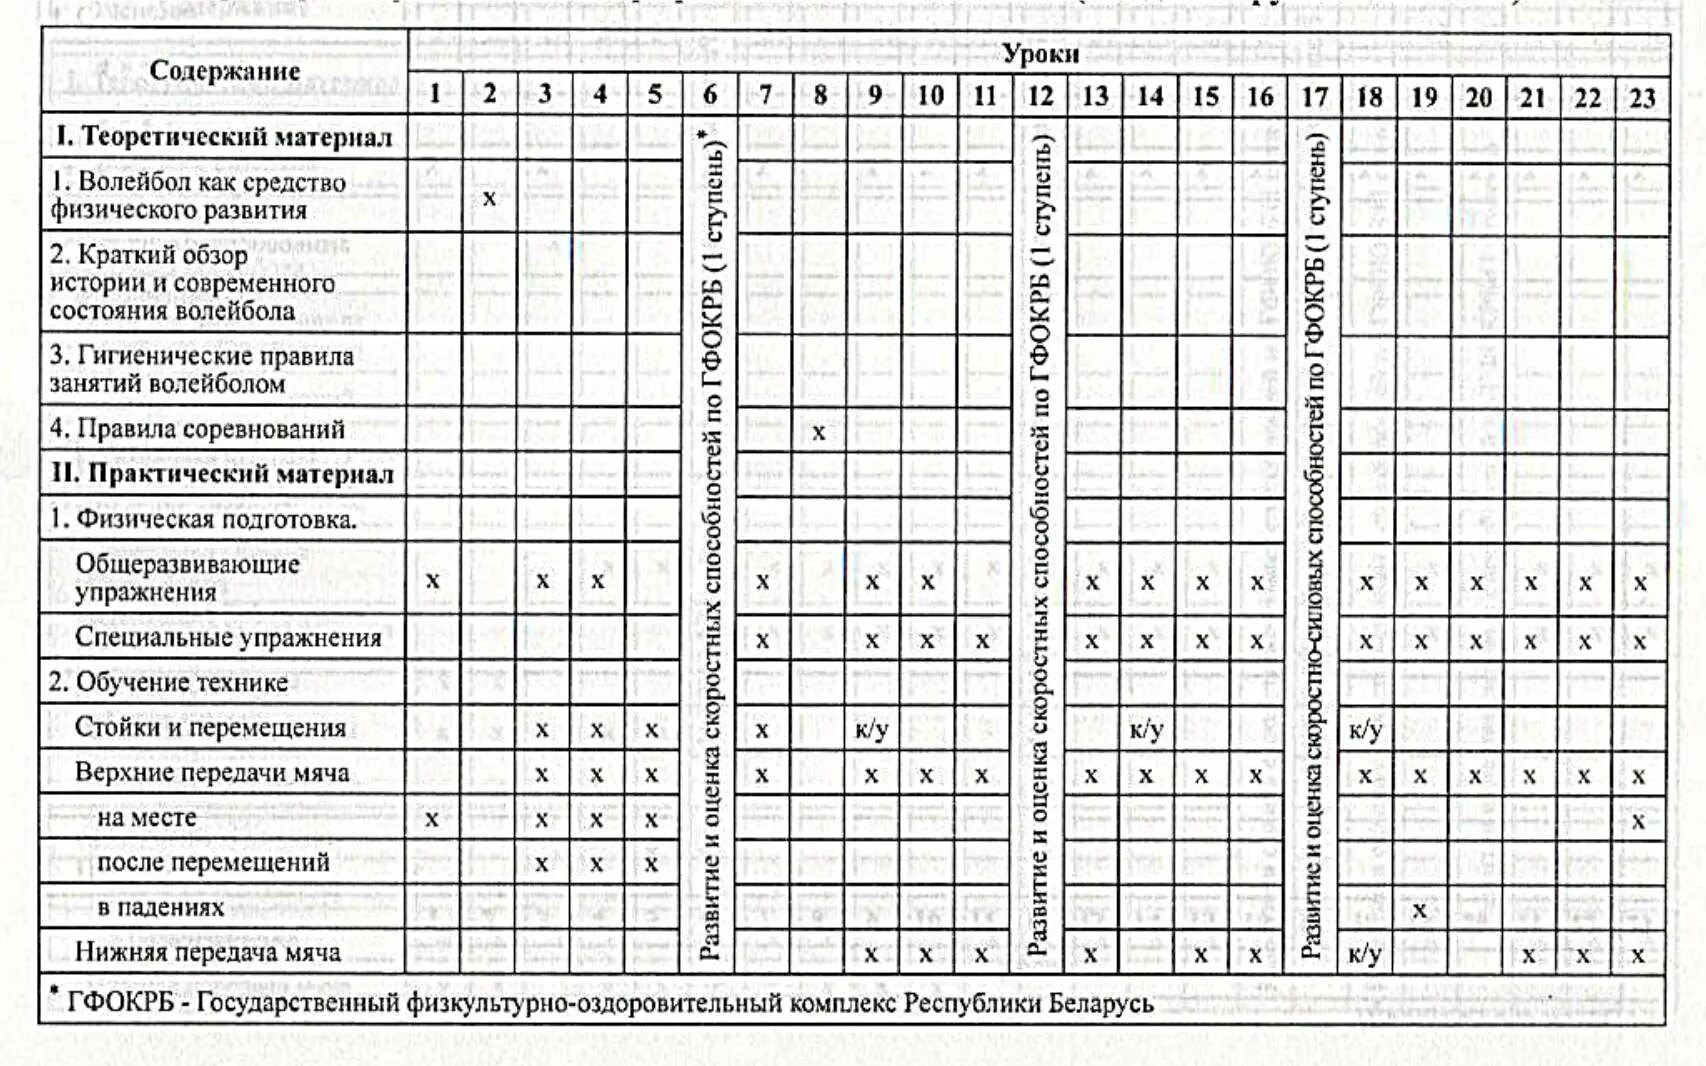 Тест по волейболу 7. Учебный план-график учебно-тренировочного занятия по волейболу. План-график учебно-тренировочного занятия по волейболу. Рабочий план график учебно тренировочных занятий по баскетболу. Годовой план-график по физической культуре 7 класс таблица.